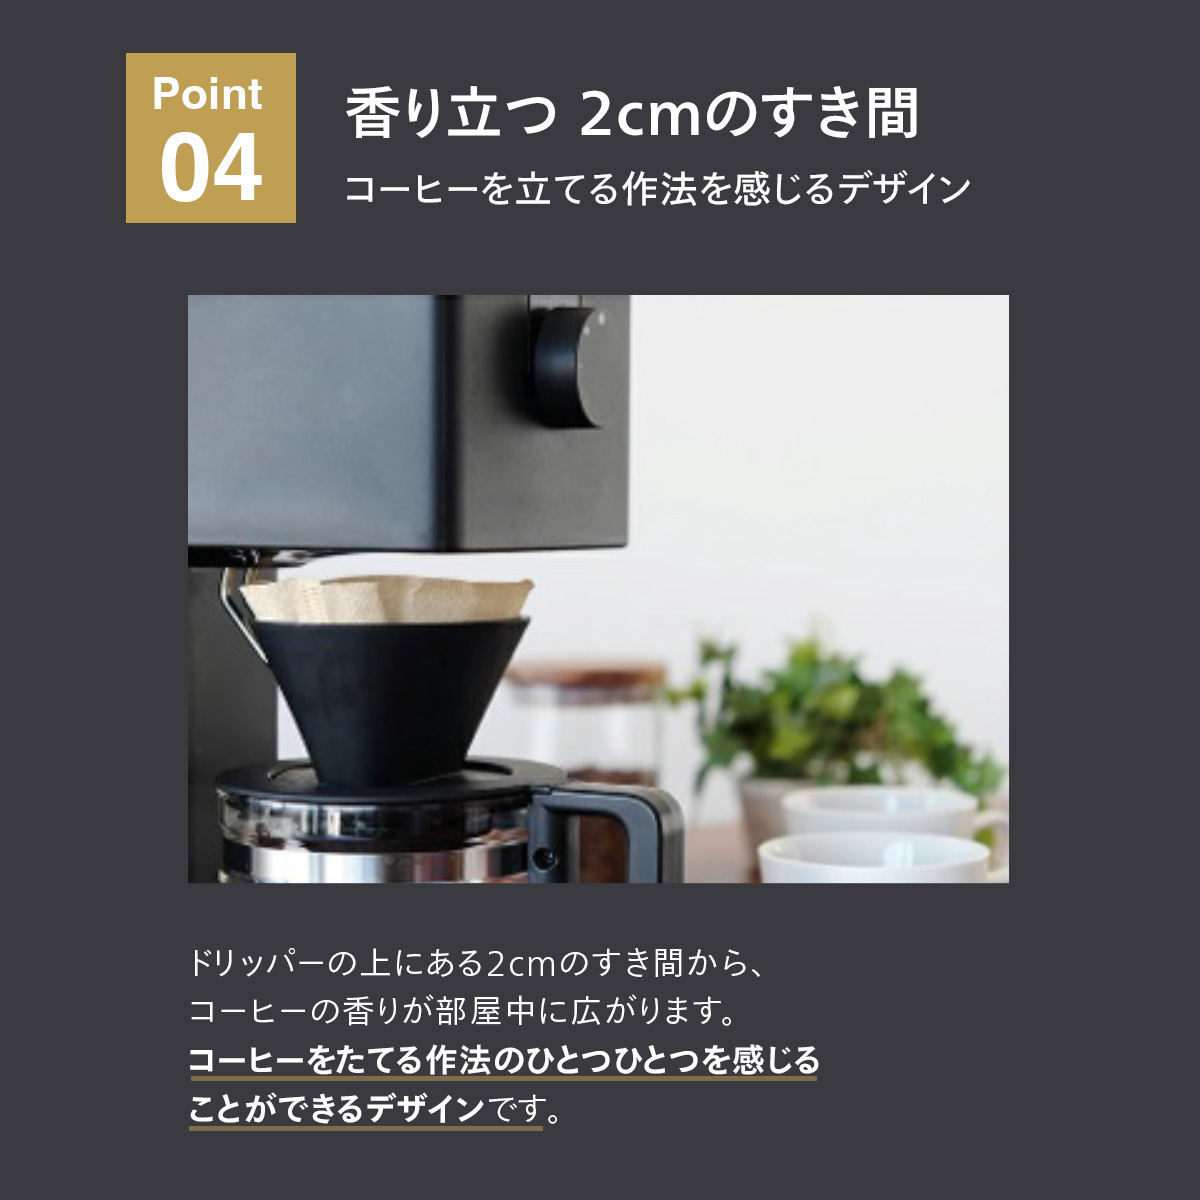 ツインバード 全自動コーヒーメーカー 3杯用 カフェバッハオリジナルフィルターセット CM-D457B-A03 日本製 ブラック